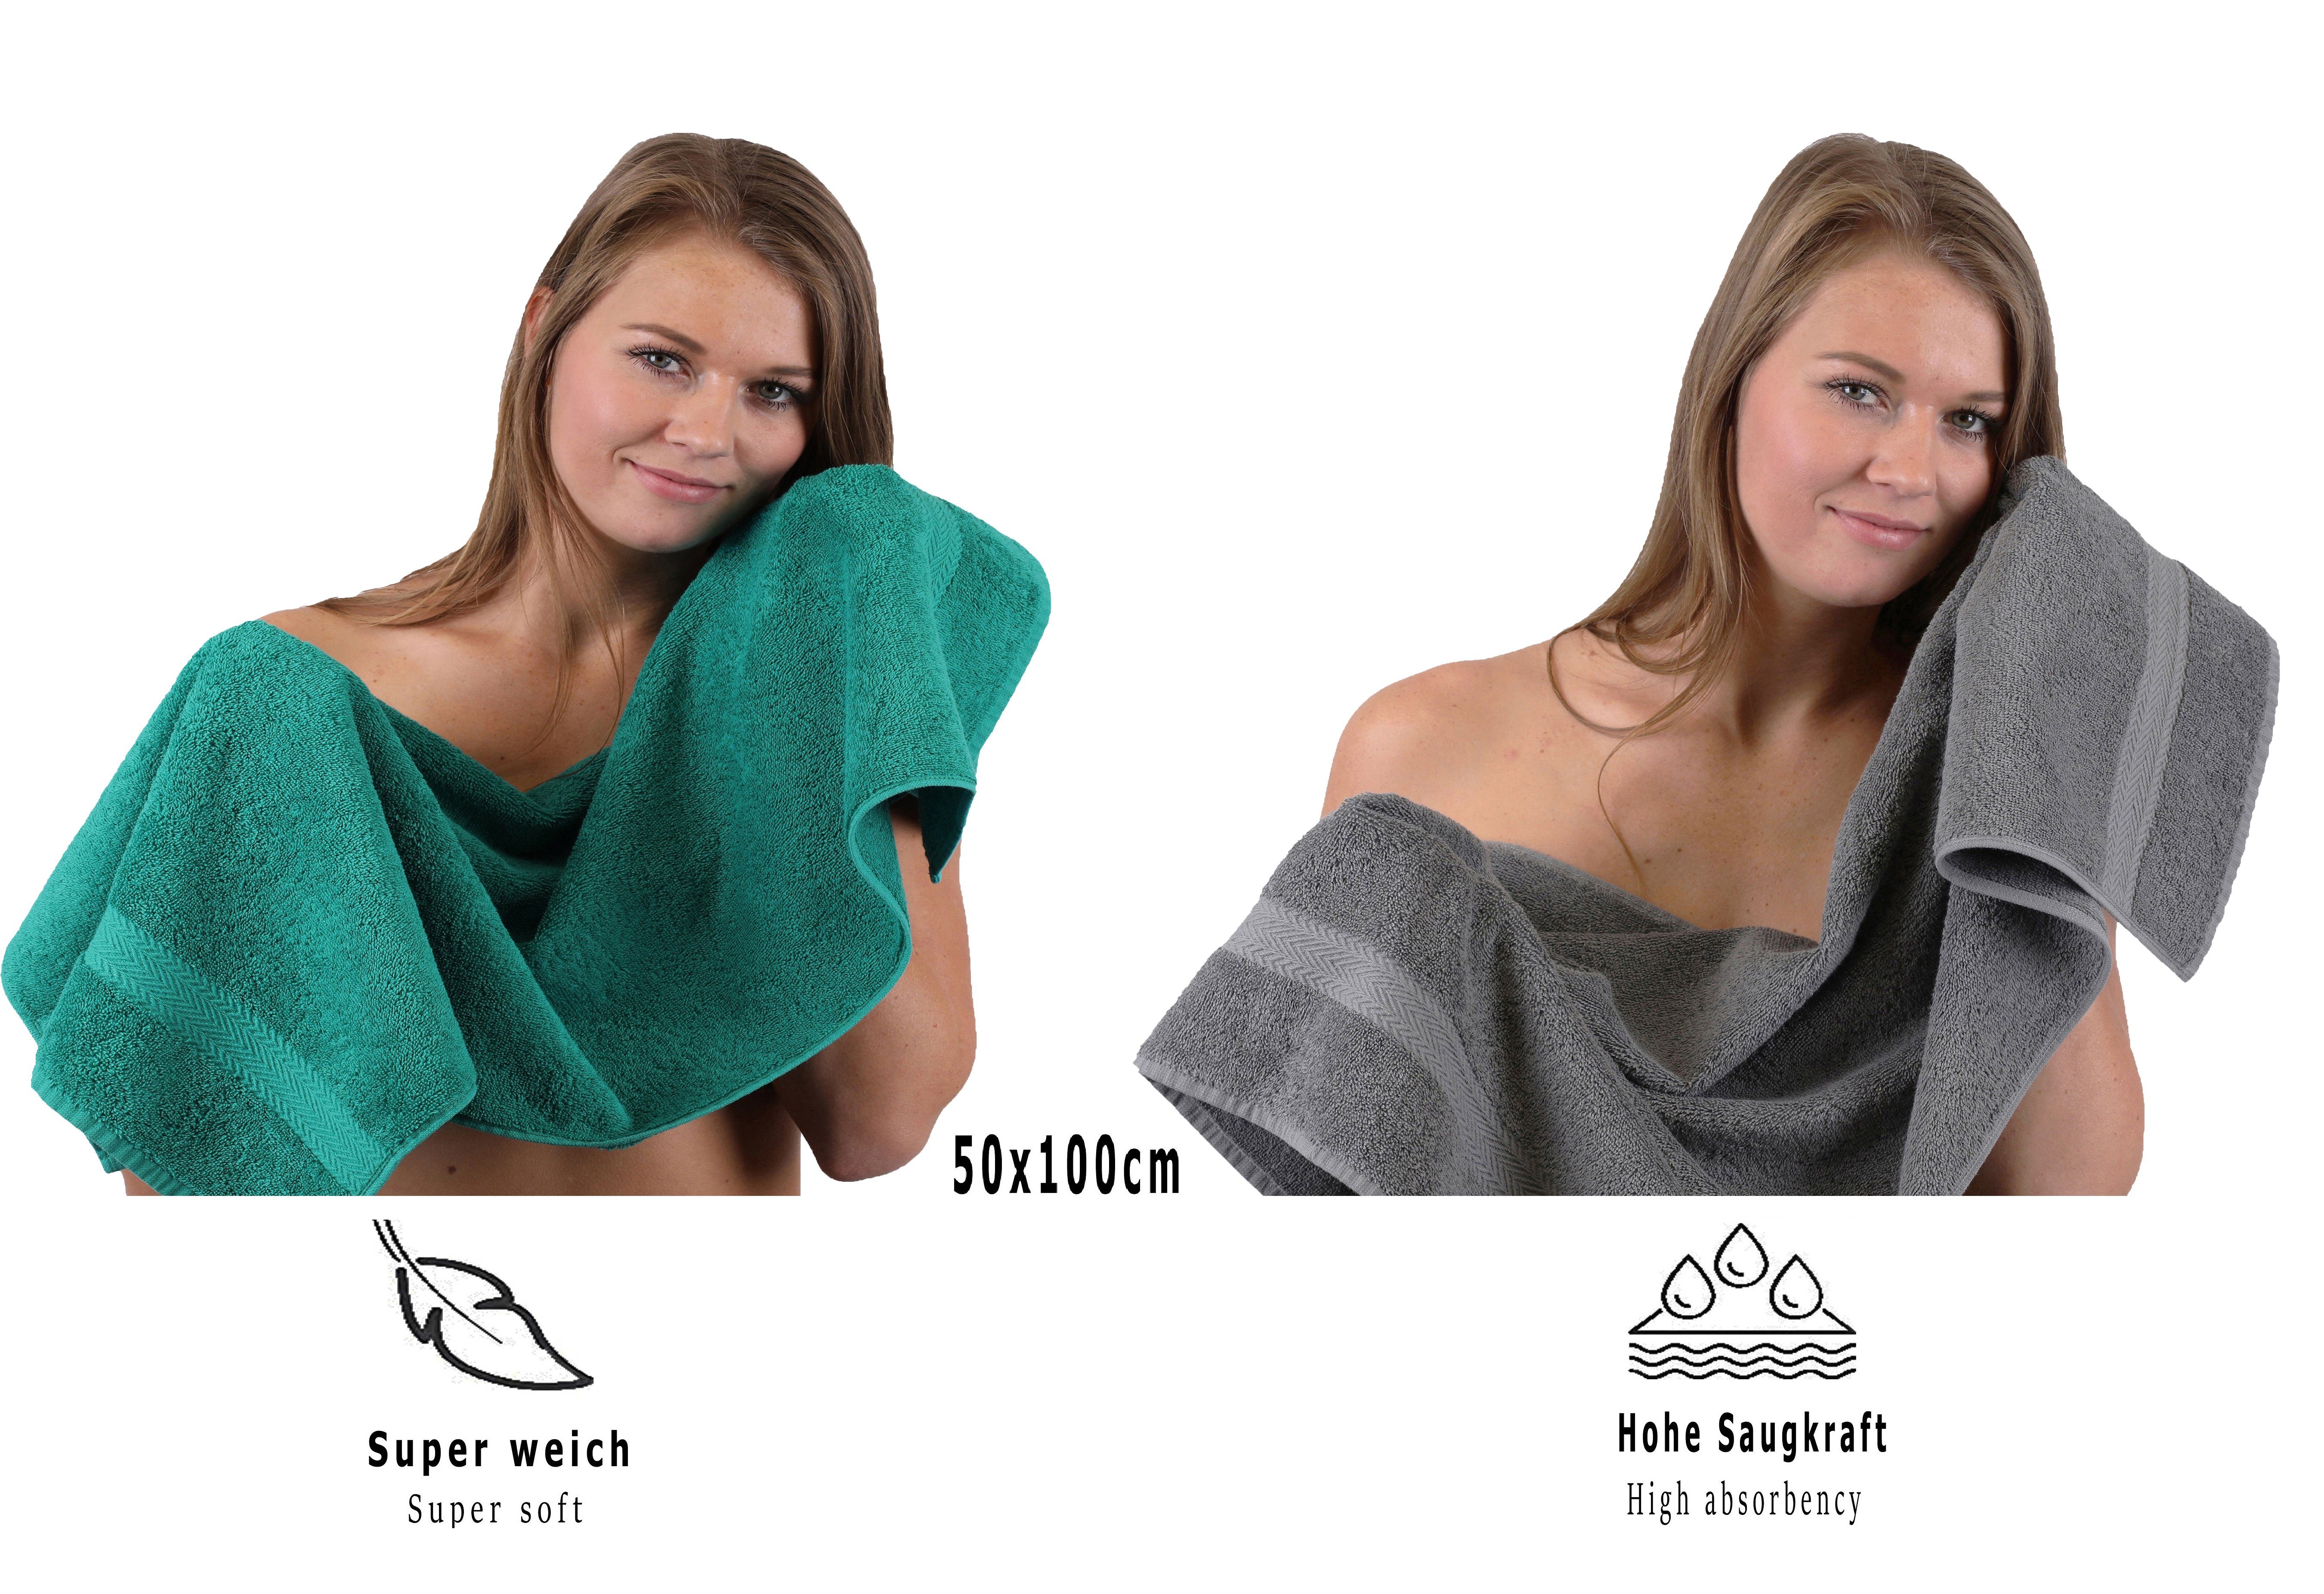 & Baumwolle, Smaragdgrün Farbe (10-tlg) 10-TLG. Premium Handtuch-Set Handtuch Set Betz 100% Anthrazit,